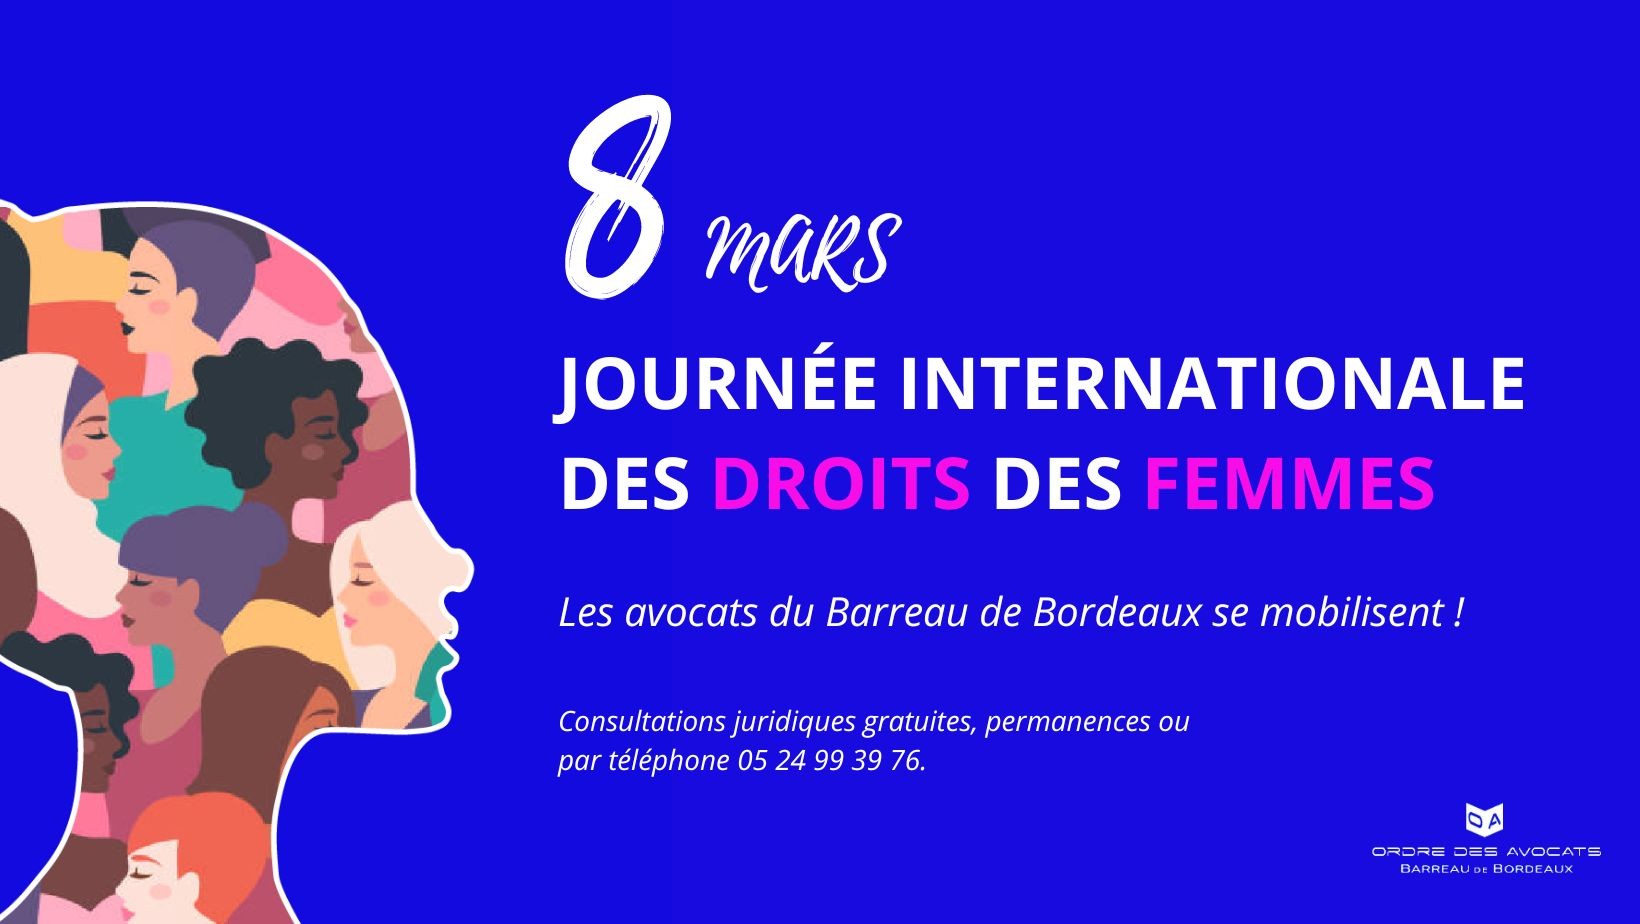 Journée internationale des droits des femmes - le 8 mars